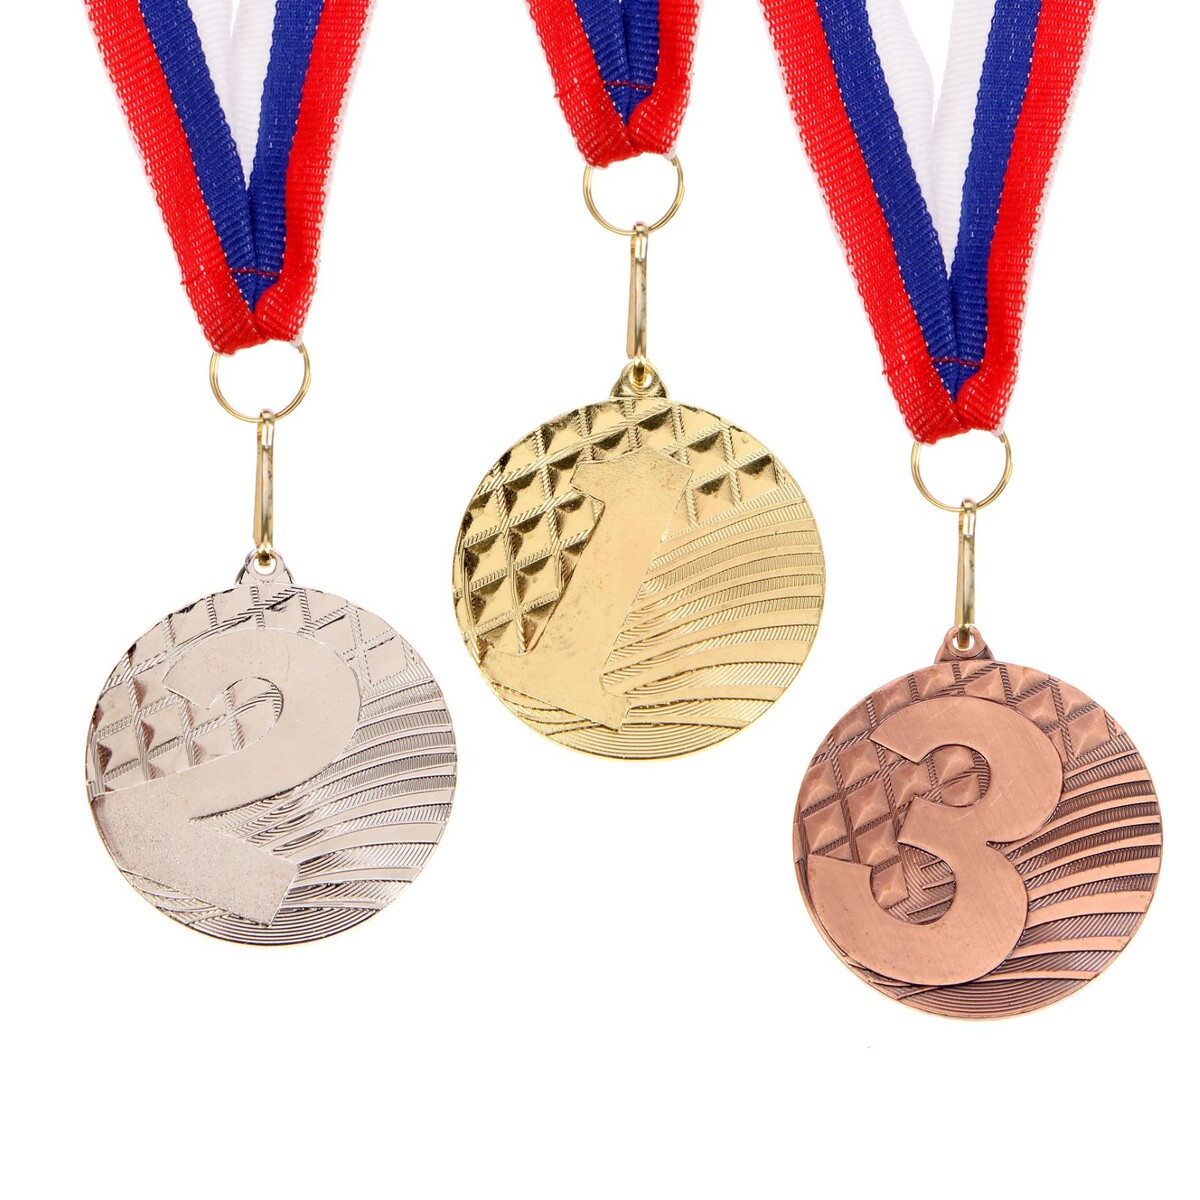 Медаль призовая 048 диам 5 см. 3 место. цвет бронз. с лентой медаль призовая 001 диам 5 см 3 место бронз с лентой